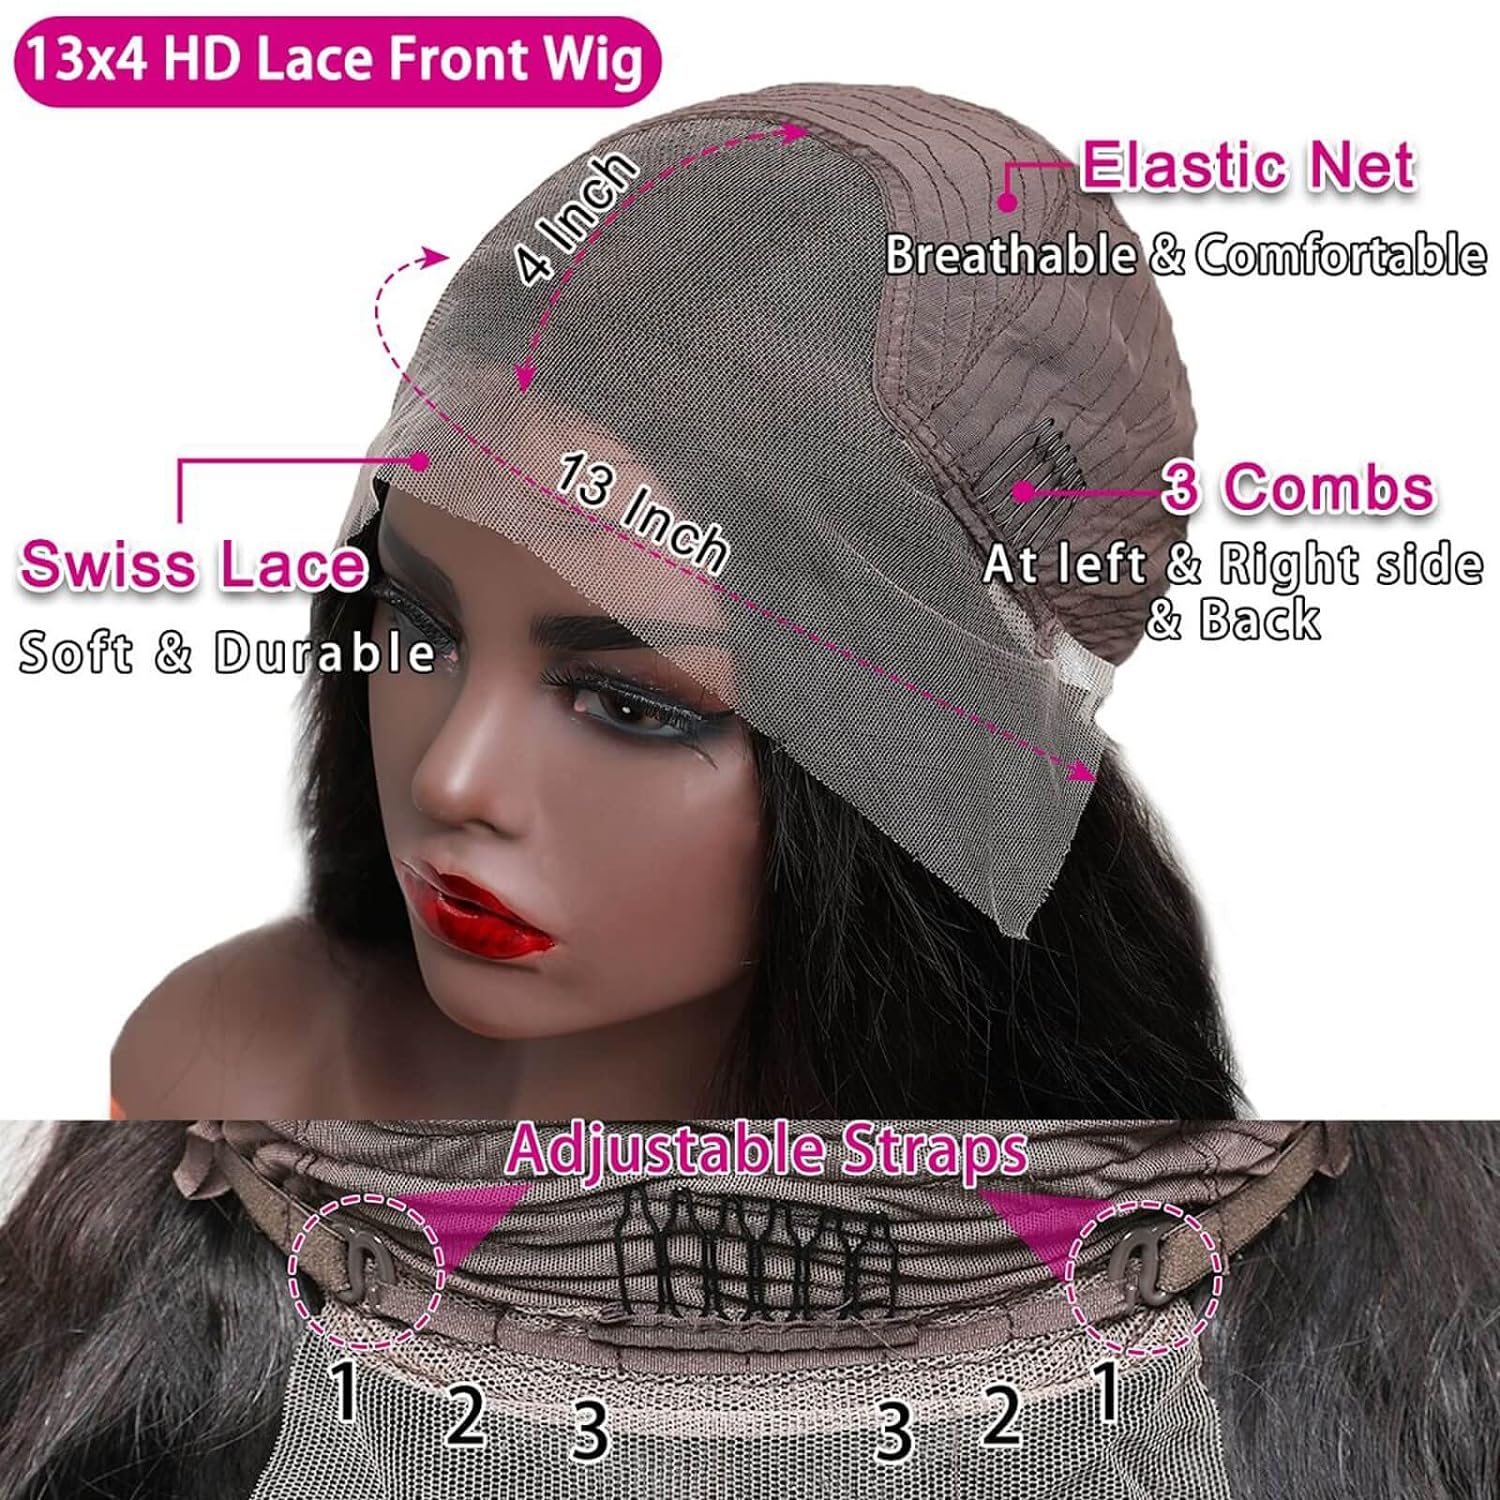 Blackbeautyhair TTNC body Blackbeauty hair 13x4 Lace Frontal Body Wave Wig